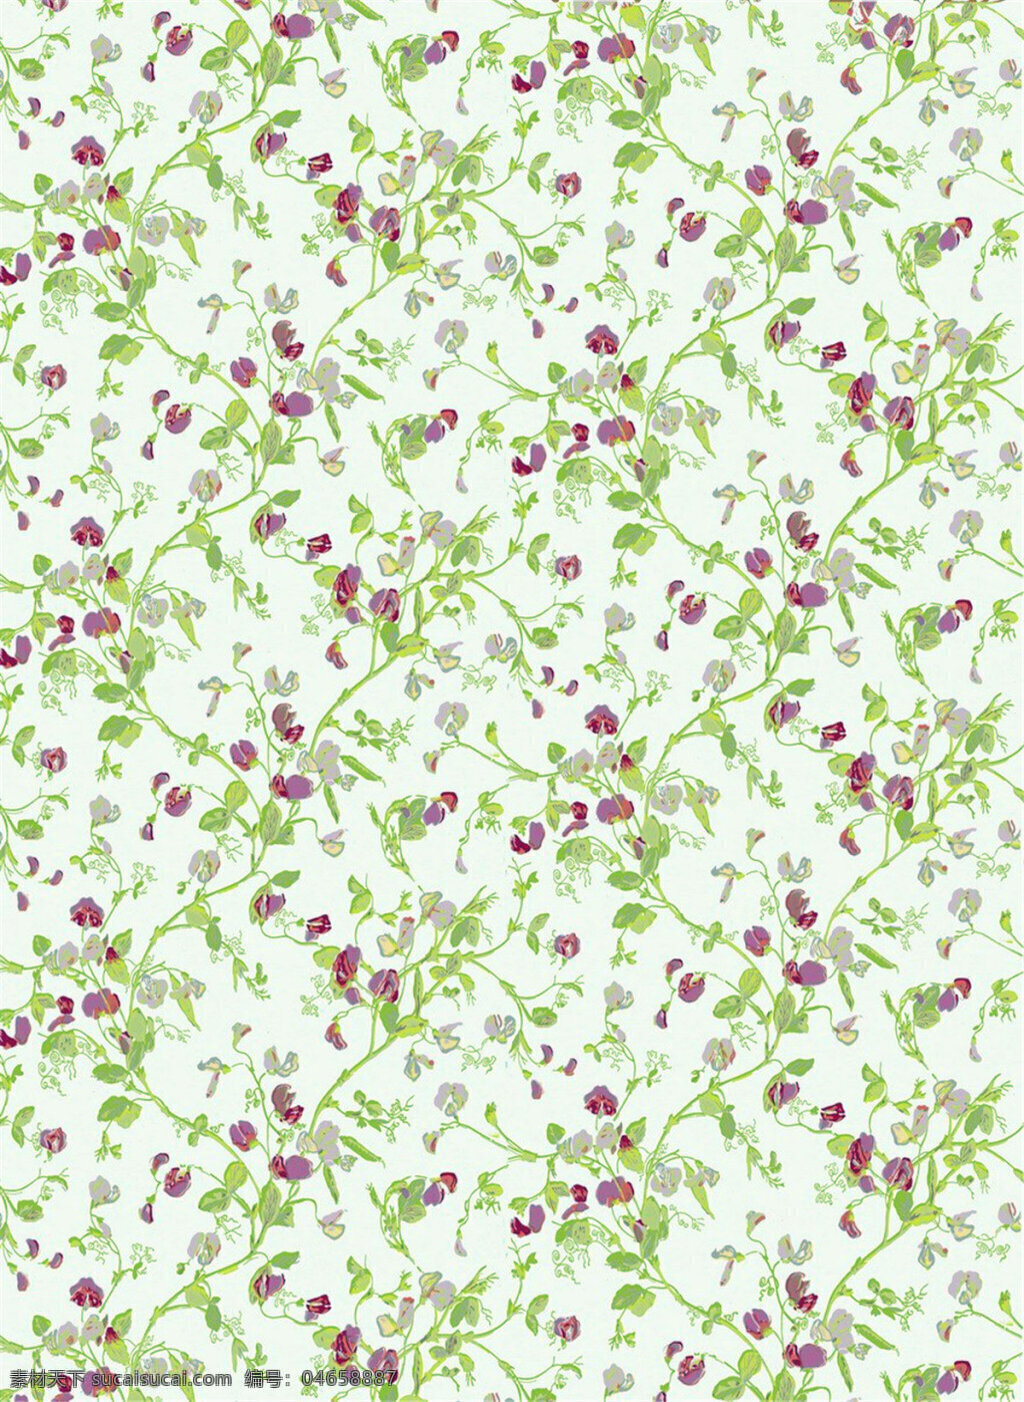 清新 简约 绿色 树枝 壁纸 图案 壁纸图案 绿色底纹 绿色树叶 植物壁纸 紫色花朵